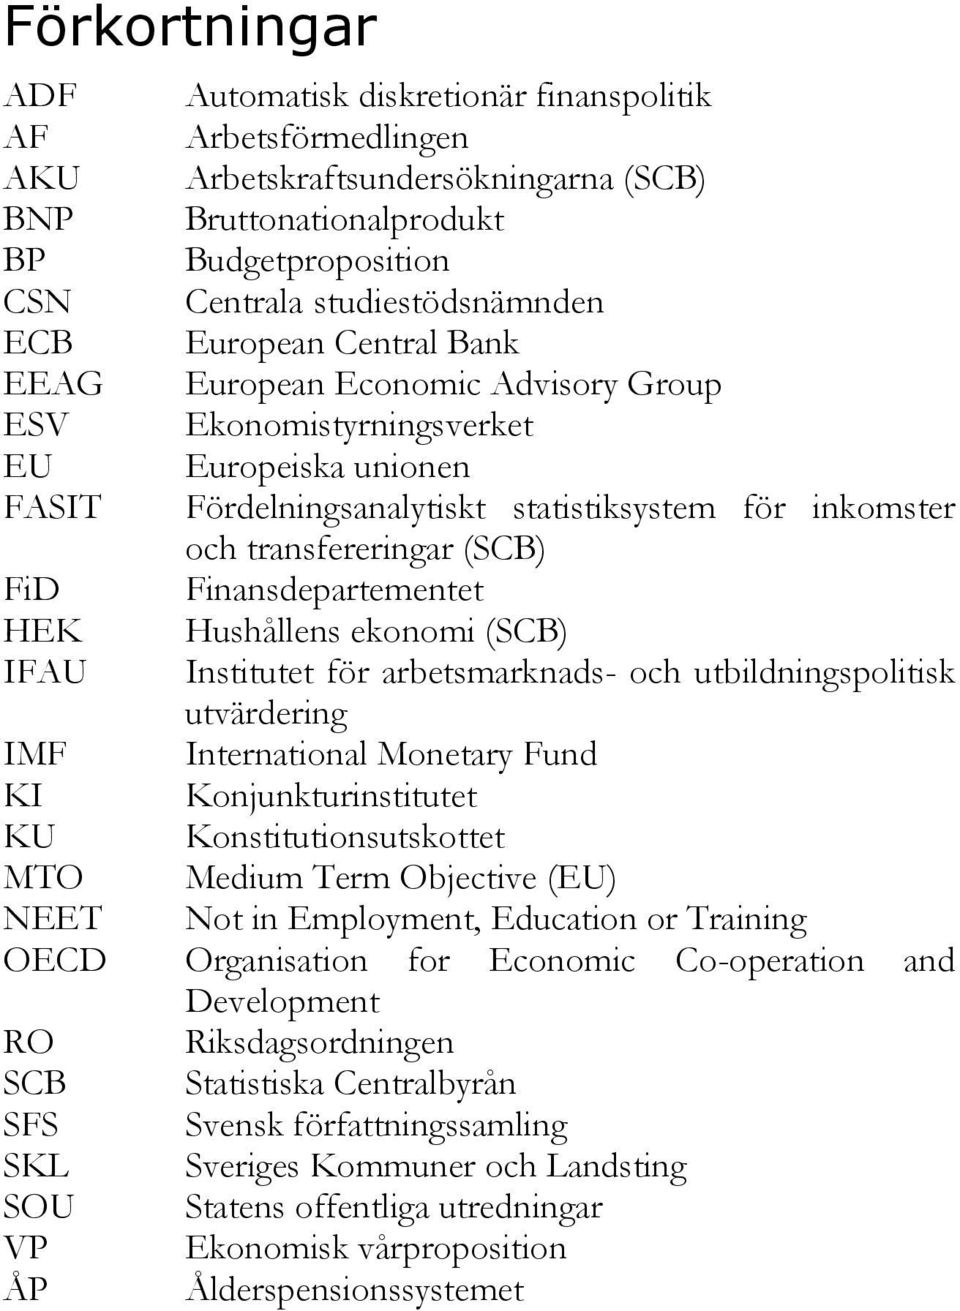 Finansdepartementet HEK Hushållens ekonomi (SCB) IFAU Institutet för arbetsmarknads- och utbildningspolitisk utvärdering IMF International Monetary Fund KI Konjunkturinstitutet KU